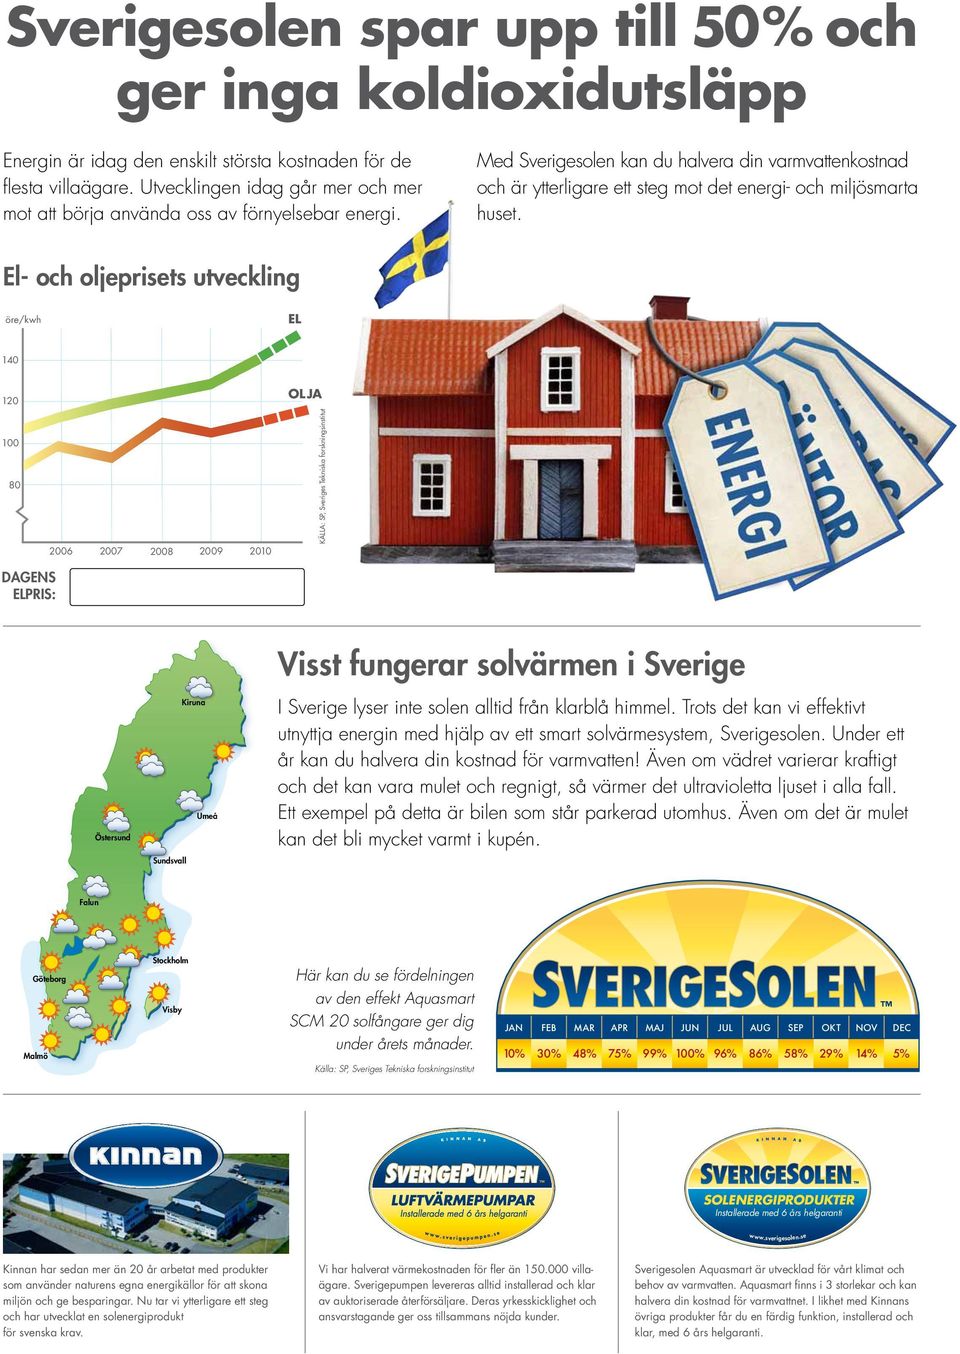 Med Sverigesolen kan du halvera din varmvattenkostnad och är ytterligare ett steg mot det energi- och miljösmarta huset.